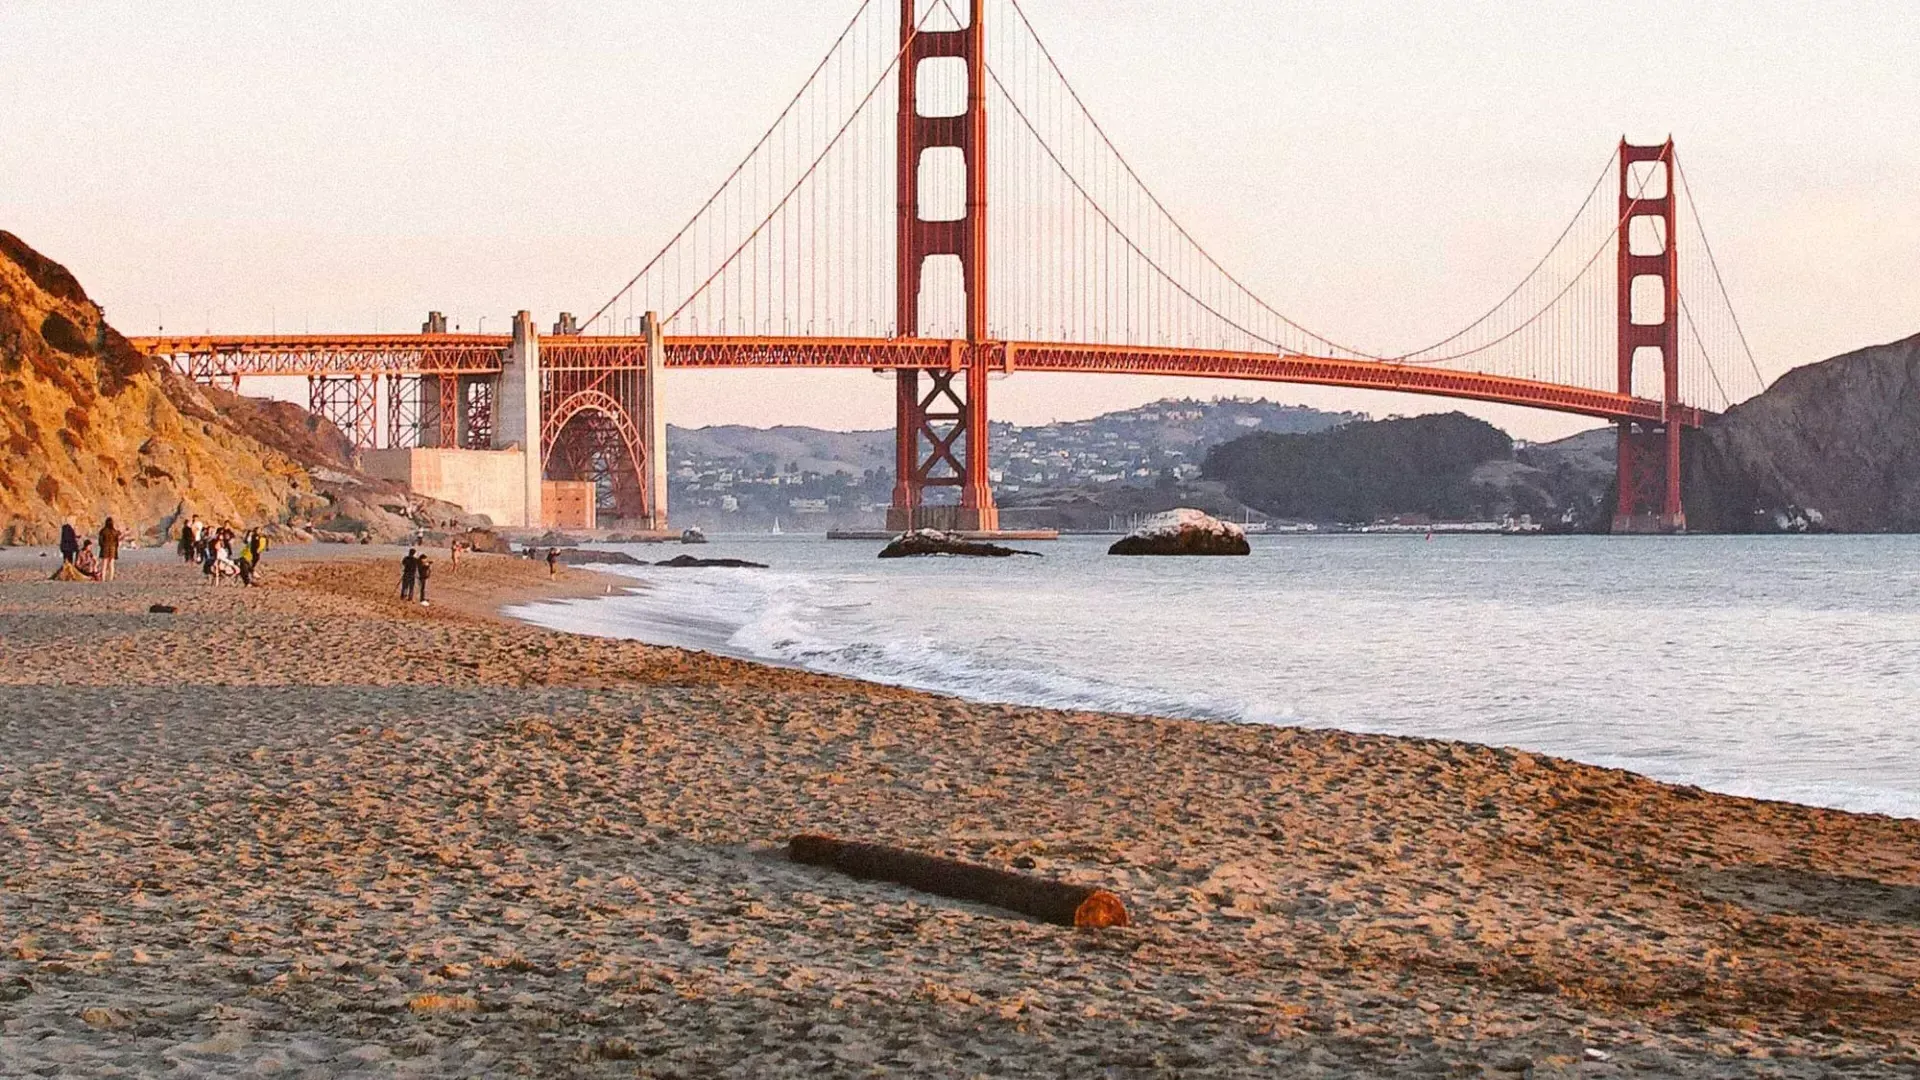 サンフランシスコのベイカービーチとゴールデンゲートブリッジを背景にした写真